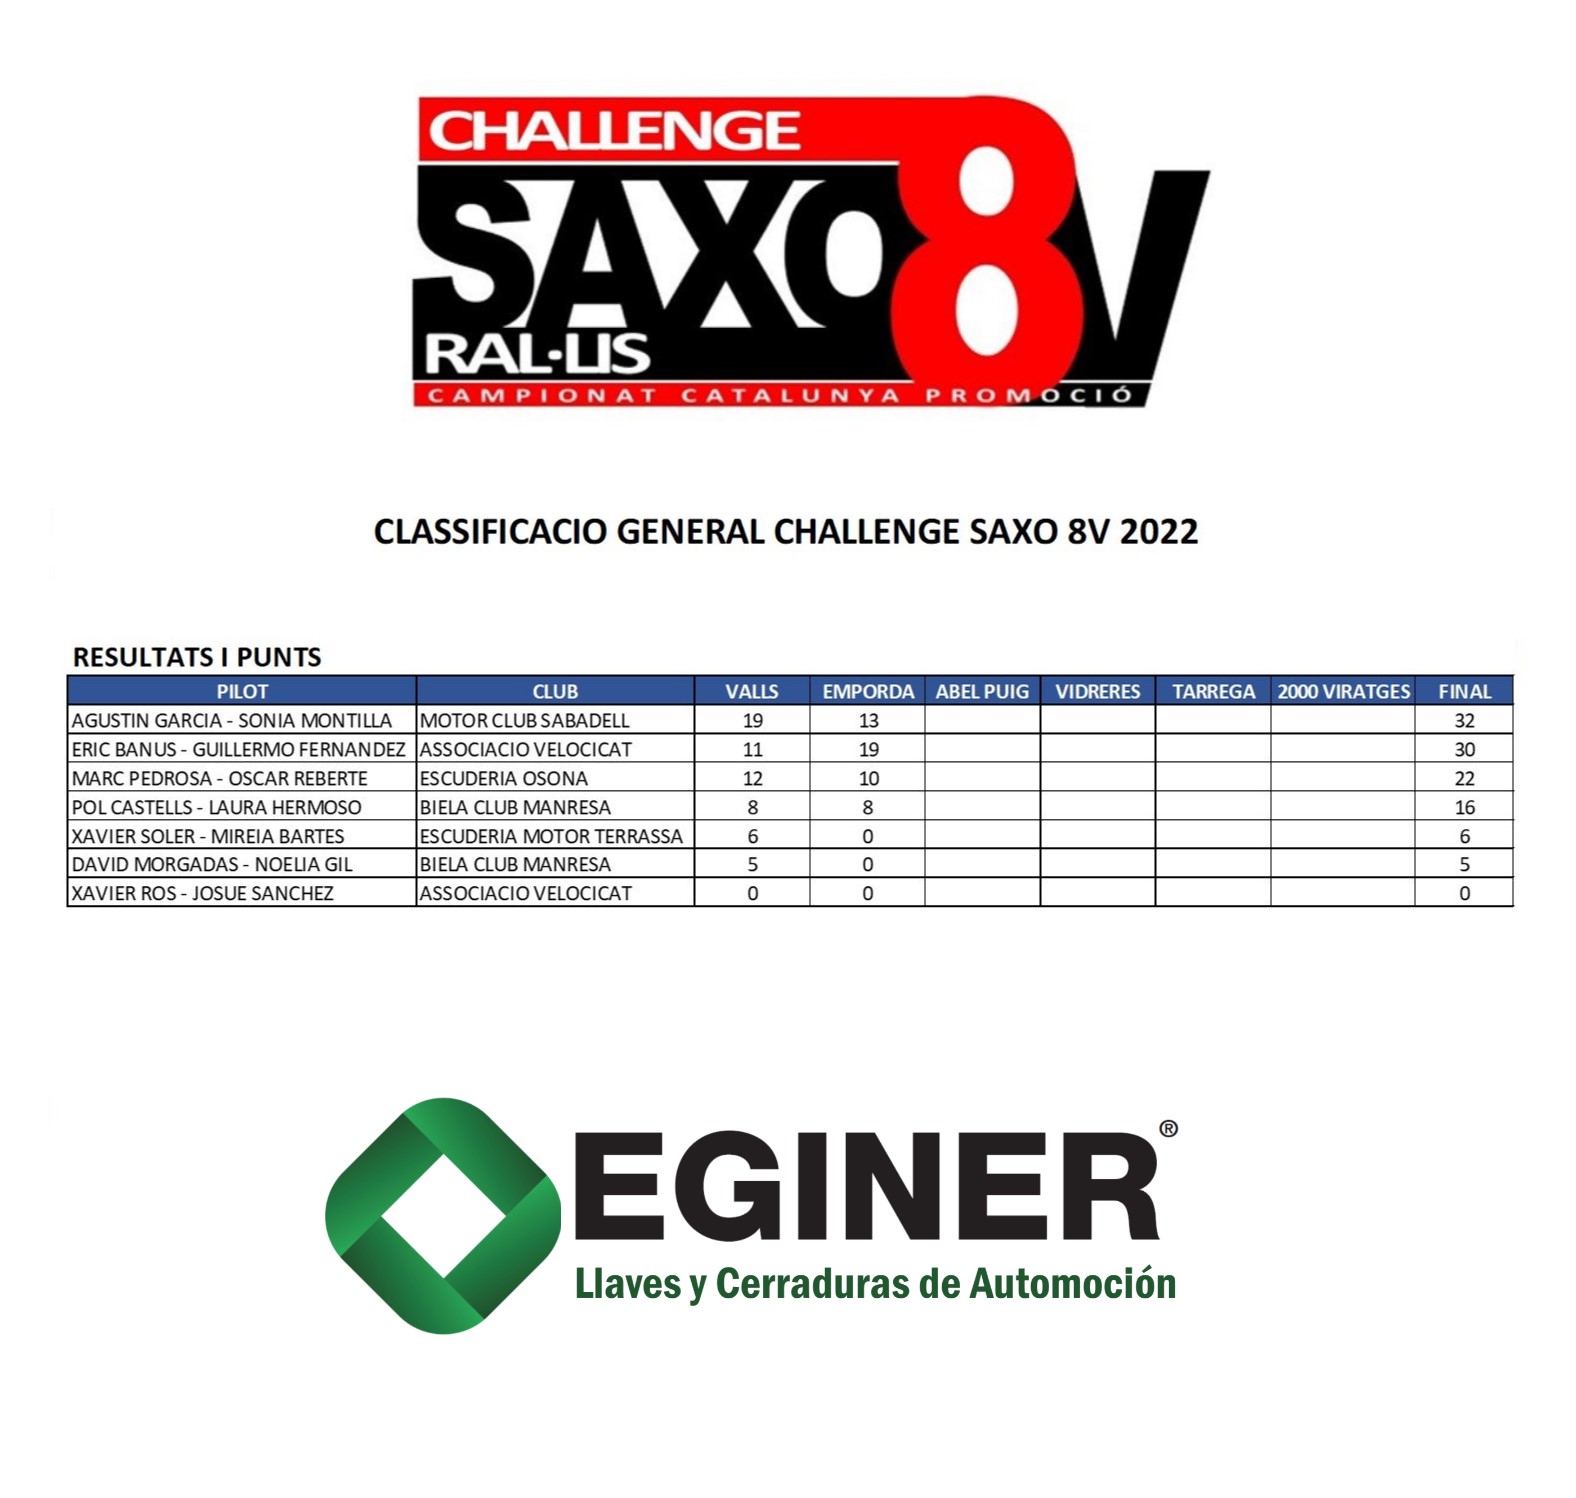 Challenge Saxo 8V